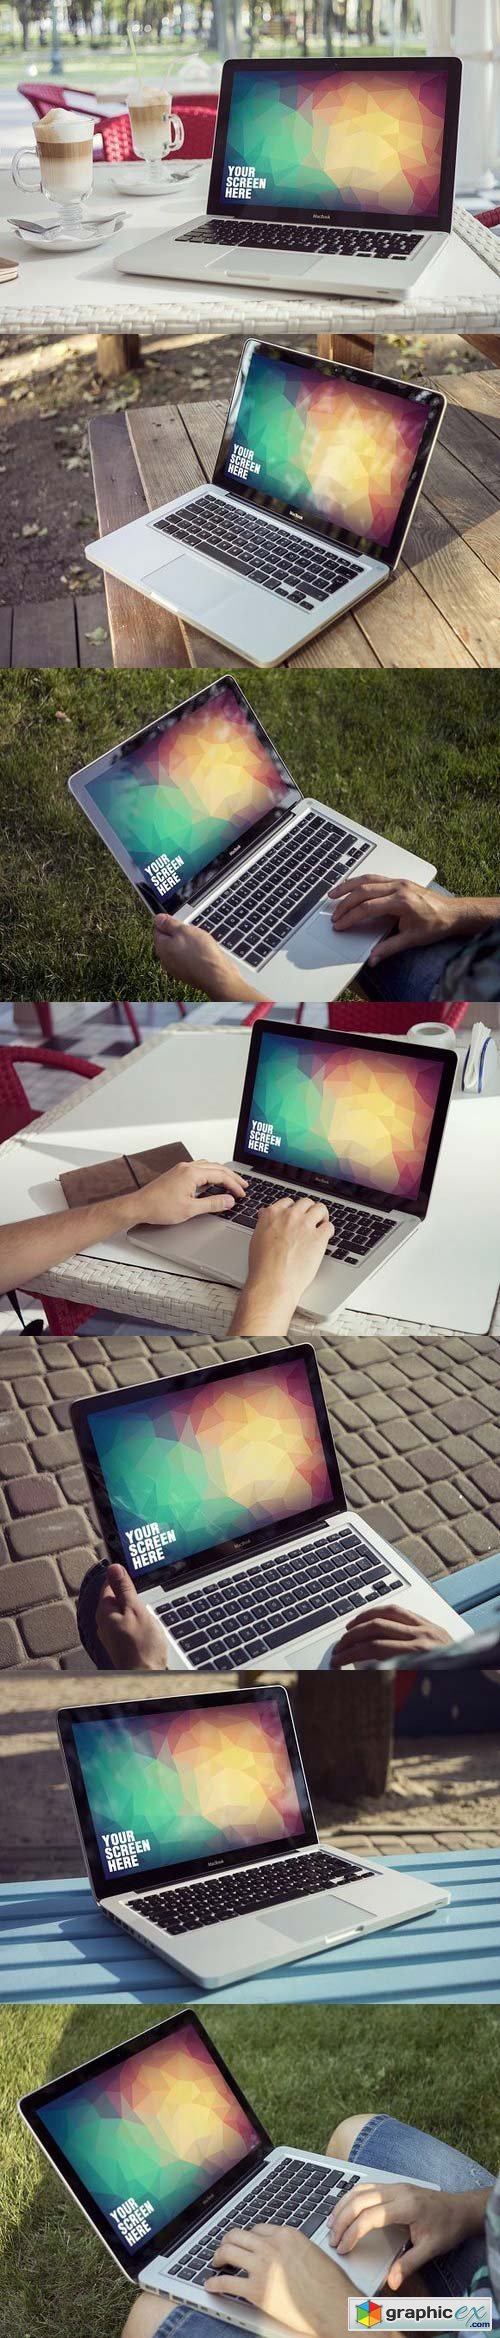 MacBook Mock-up Set